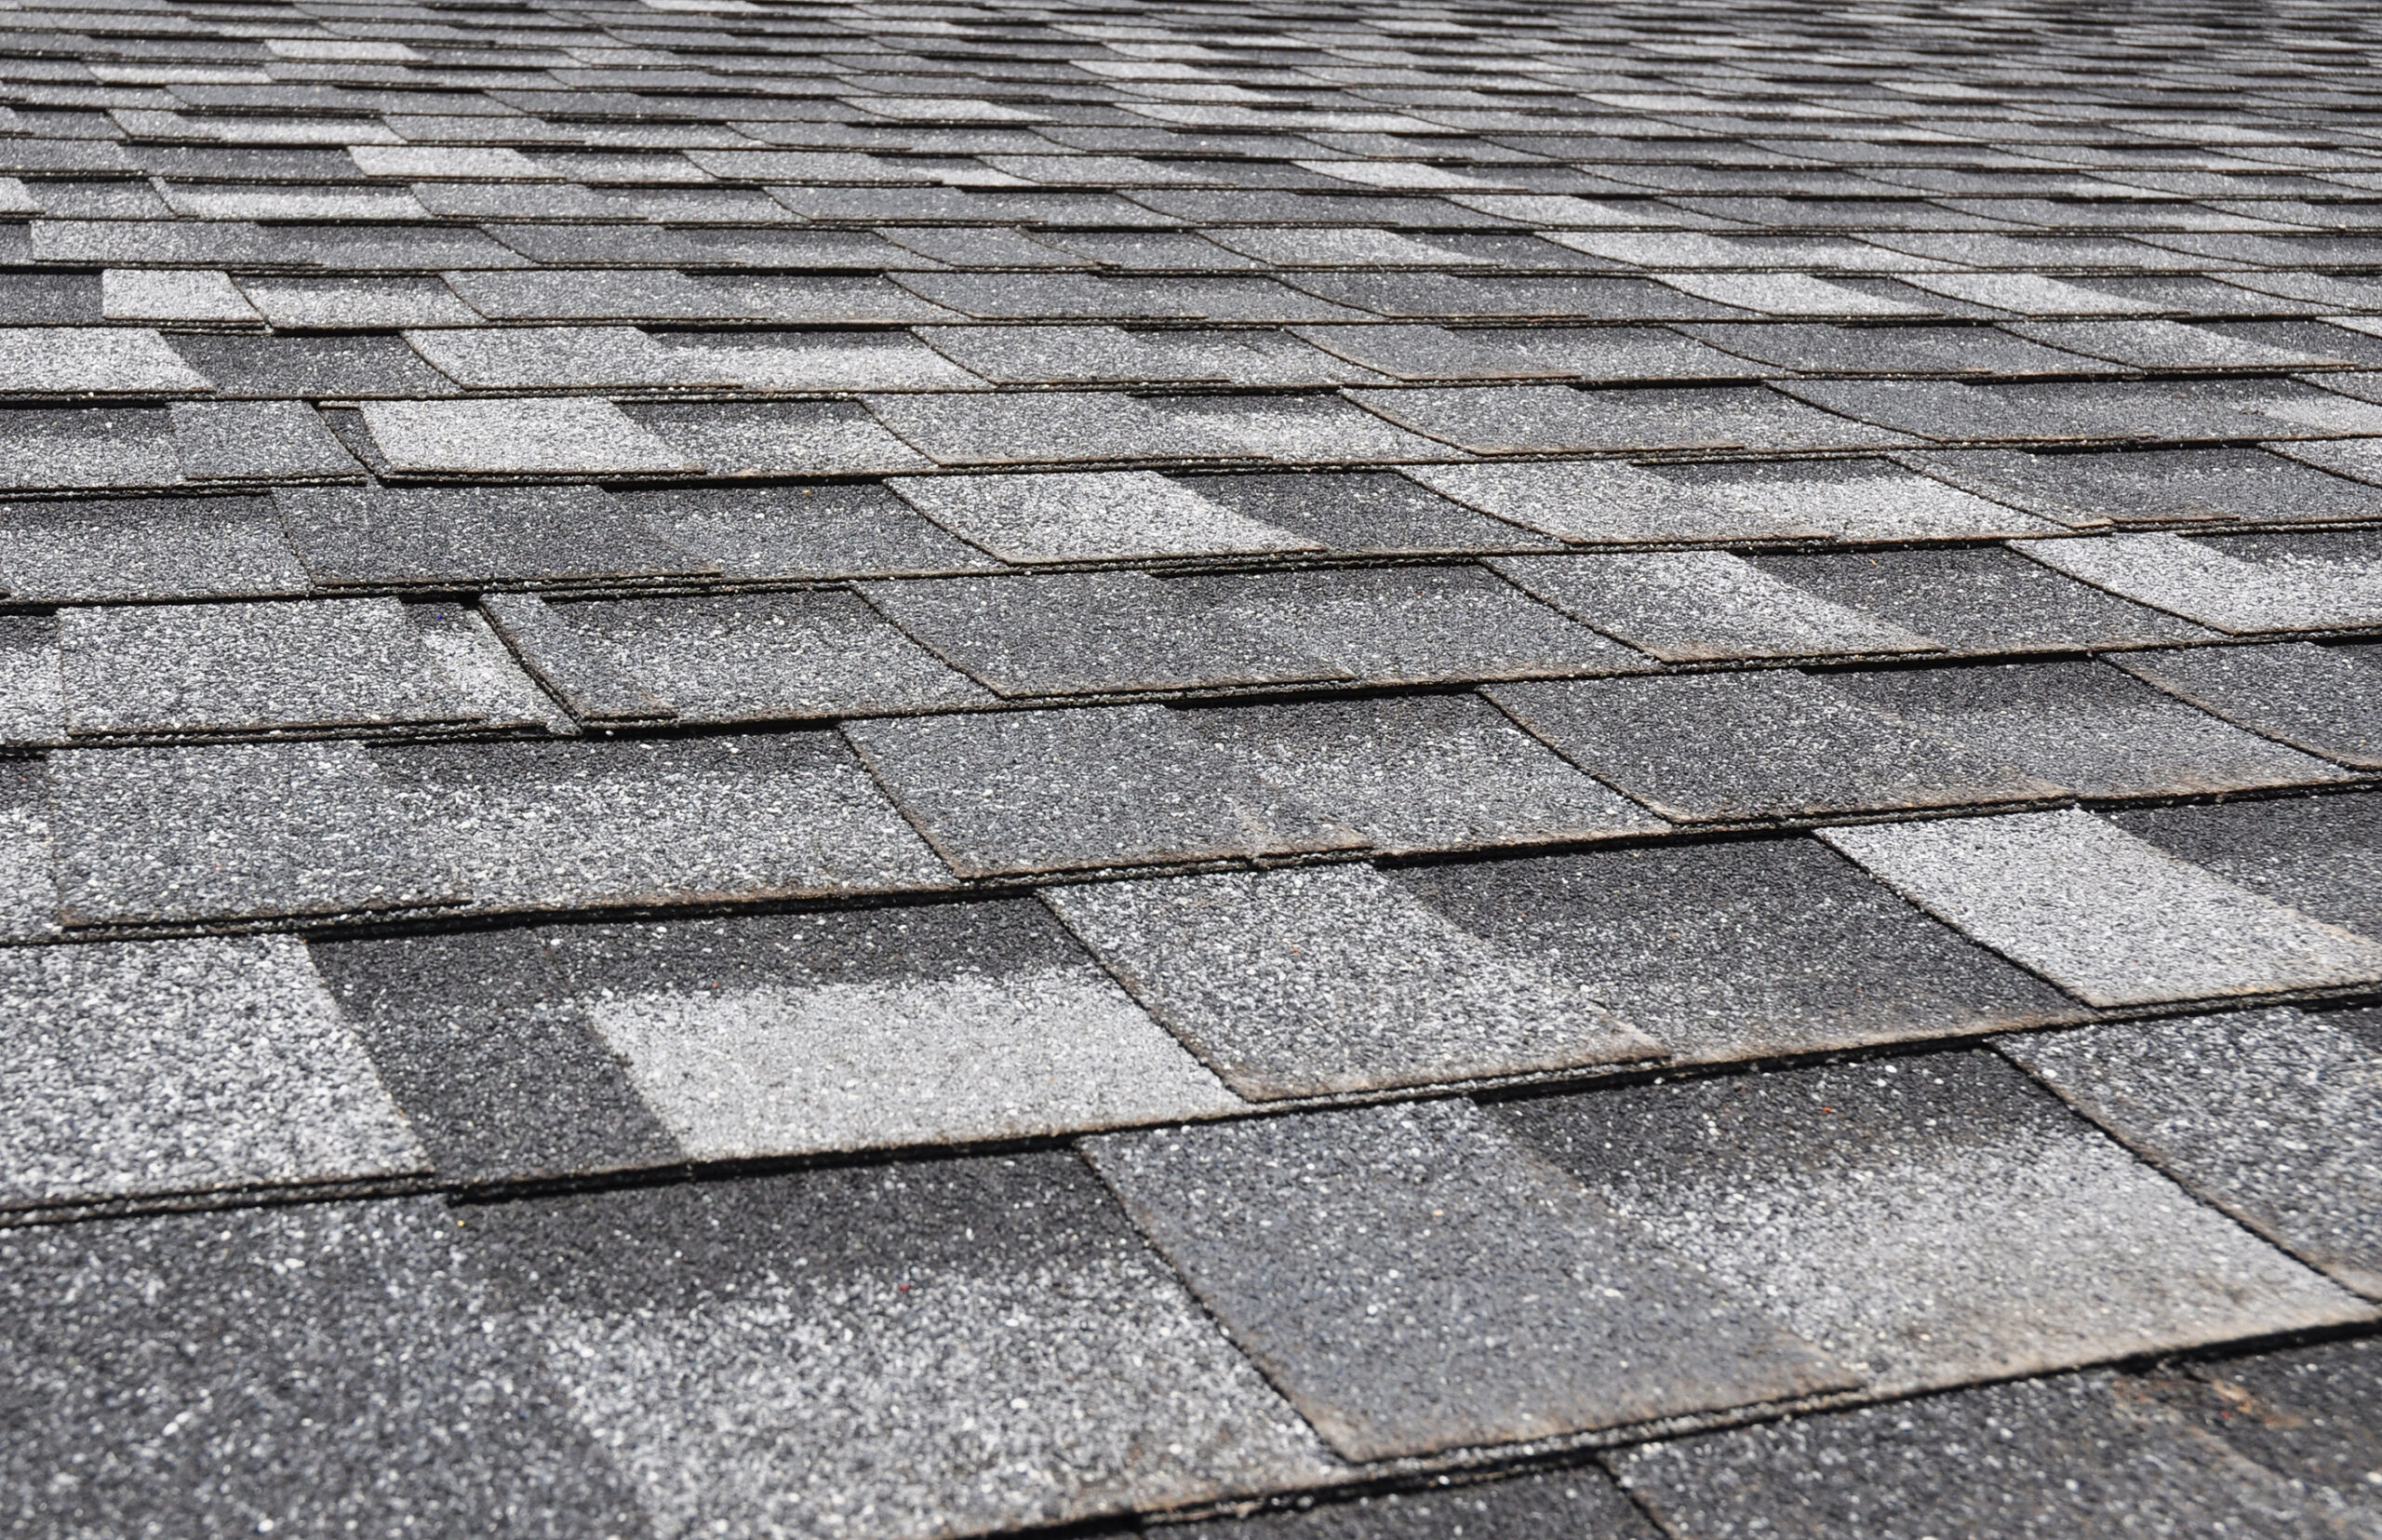 Asphalt shingle roofer Best Choice Roofing